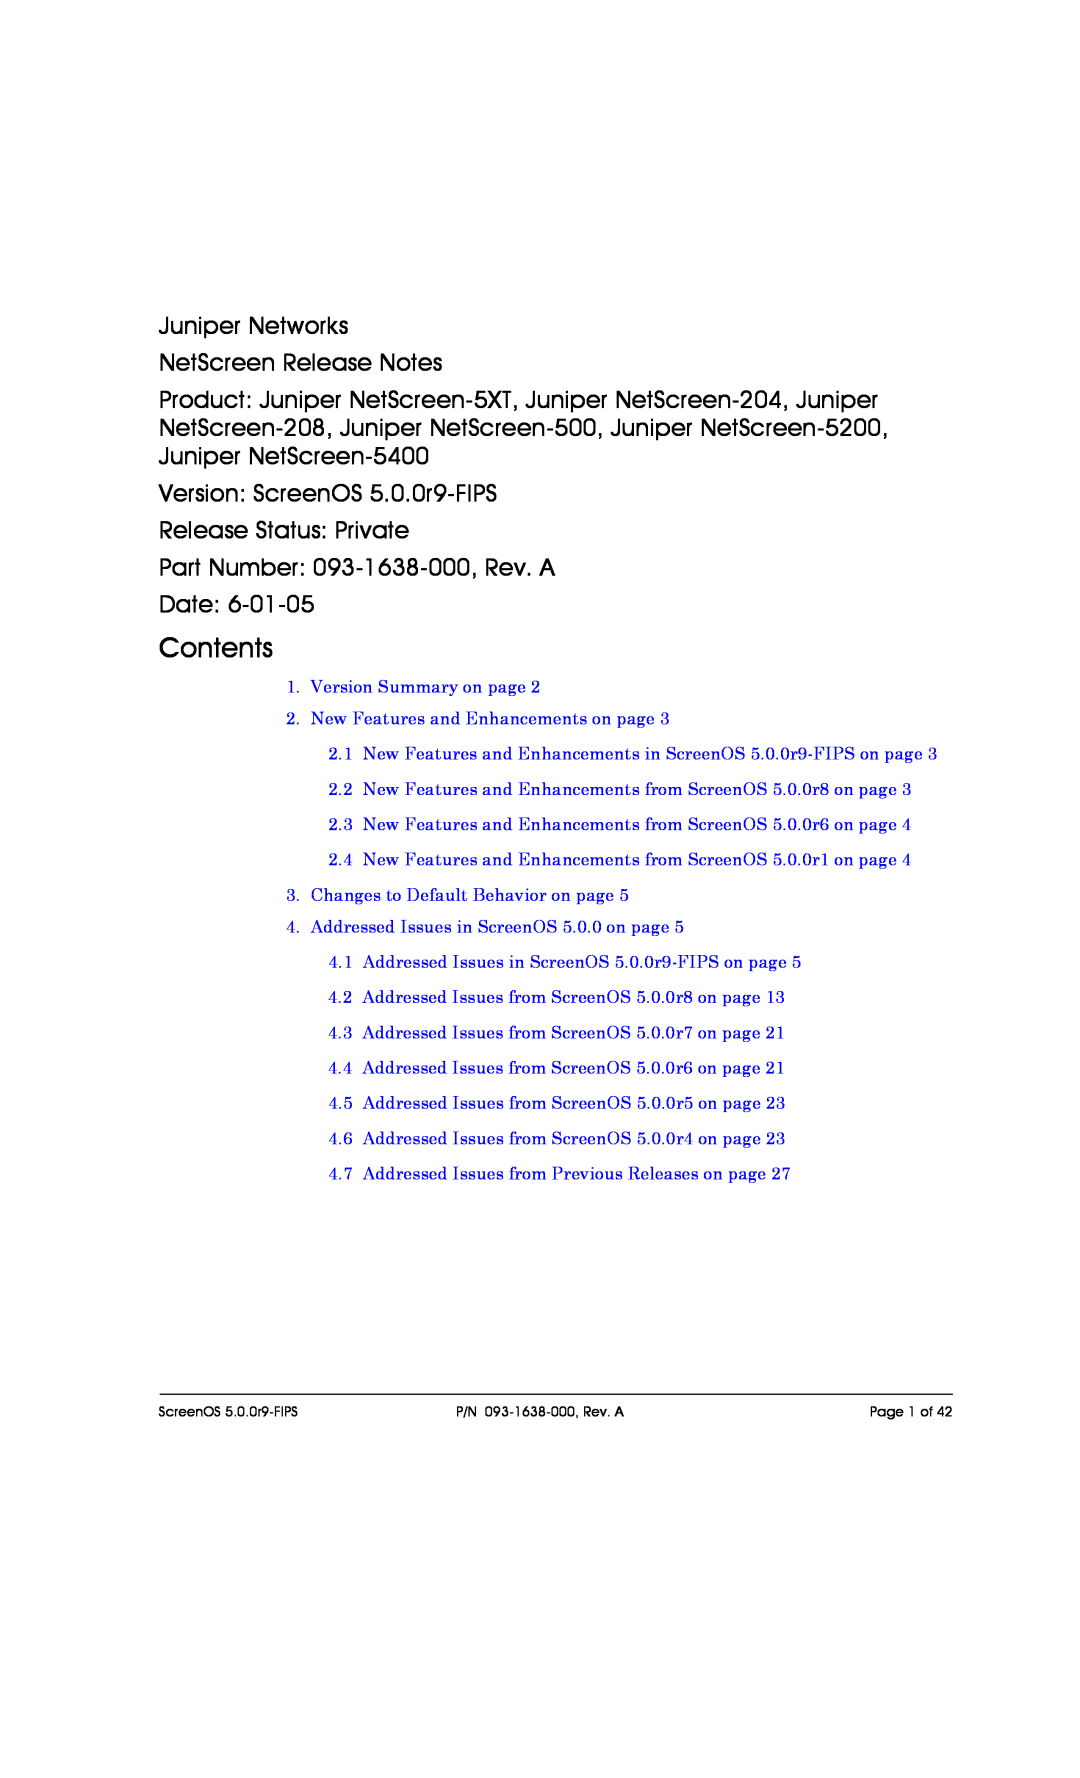 Juniper Networks 208, 5200, 204, 500, 5XT, 5400 manual Contents, Juniper Networks NetScreen Release Notes 